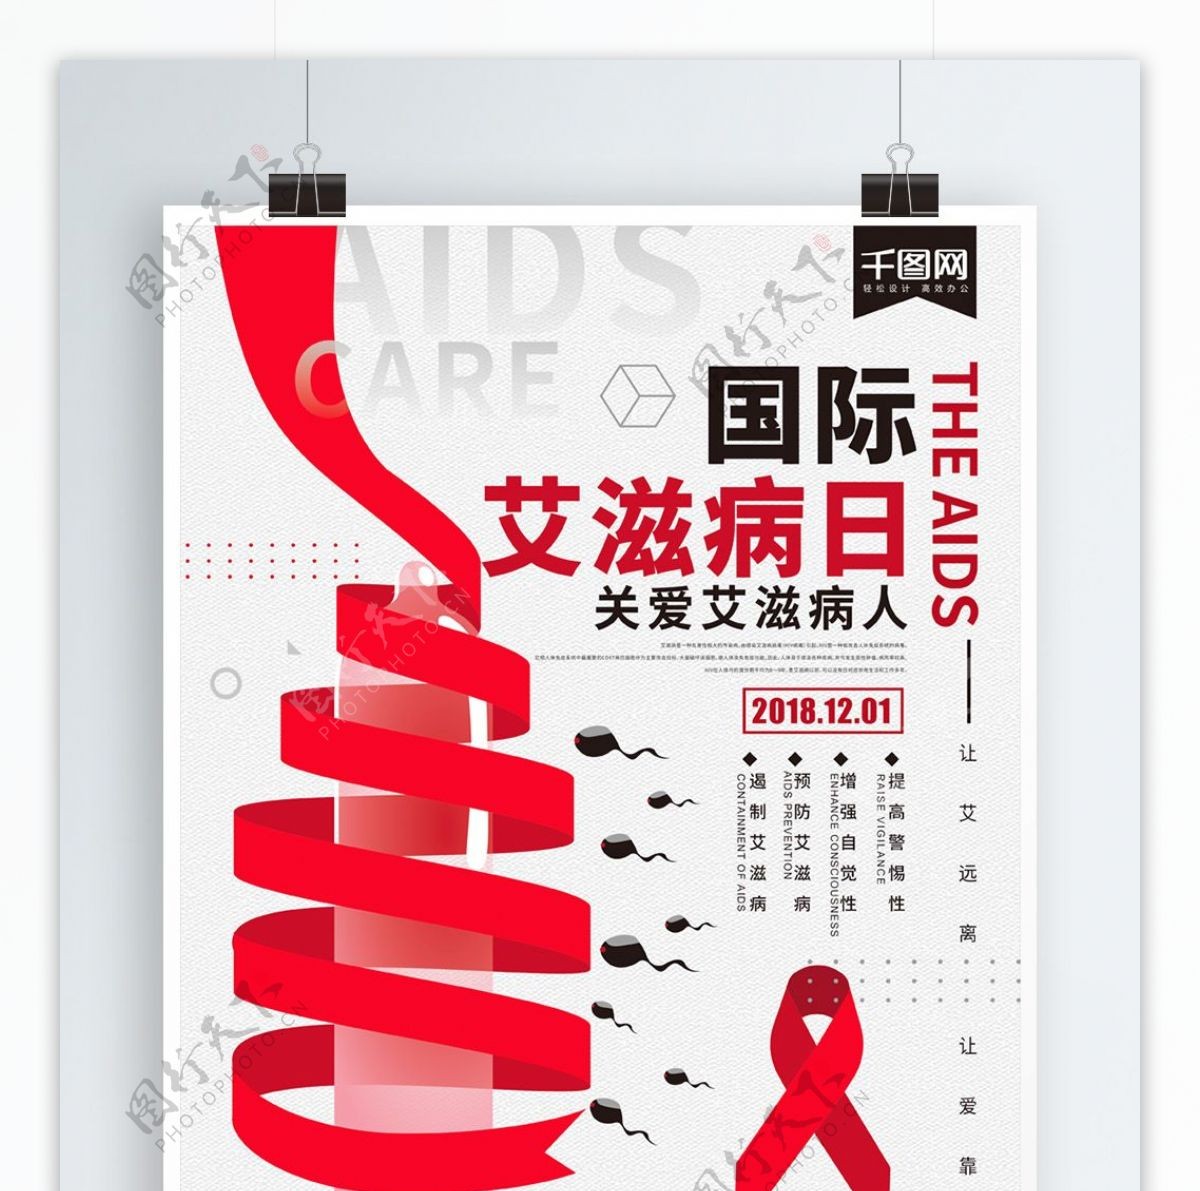 简约世界艾滋病日公益宣传海报